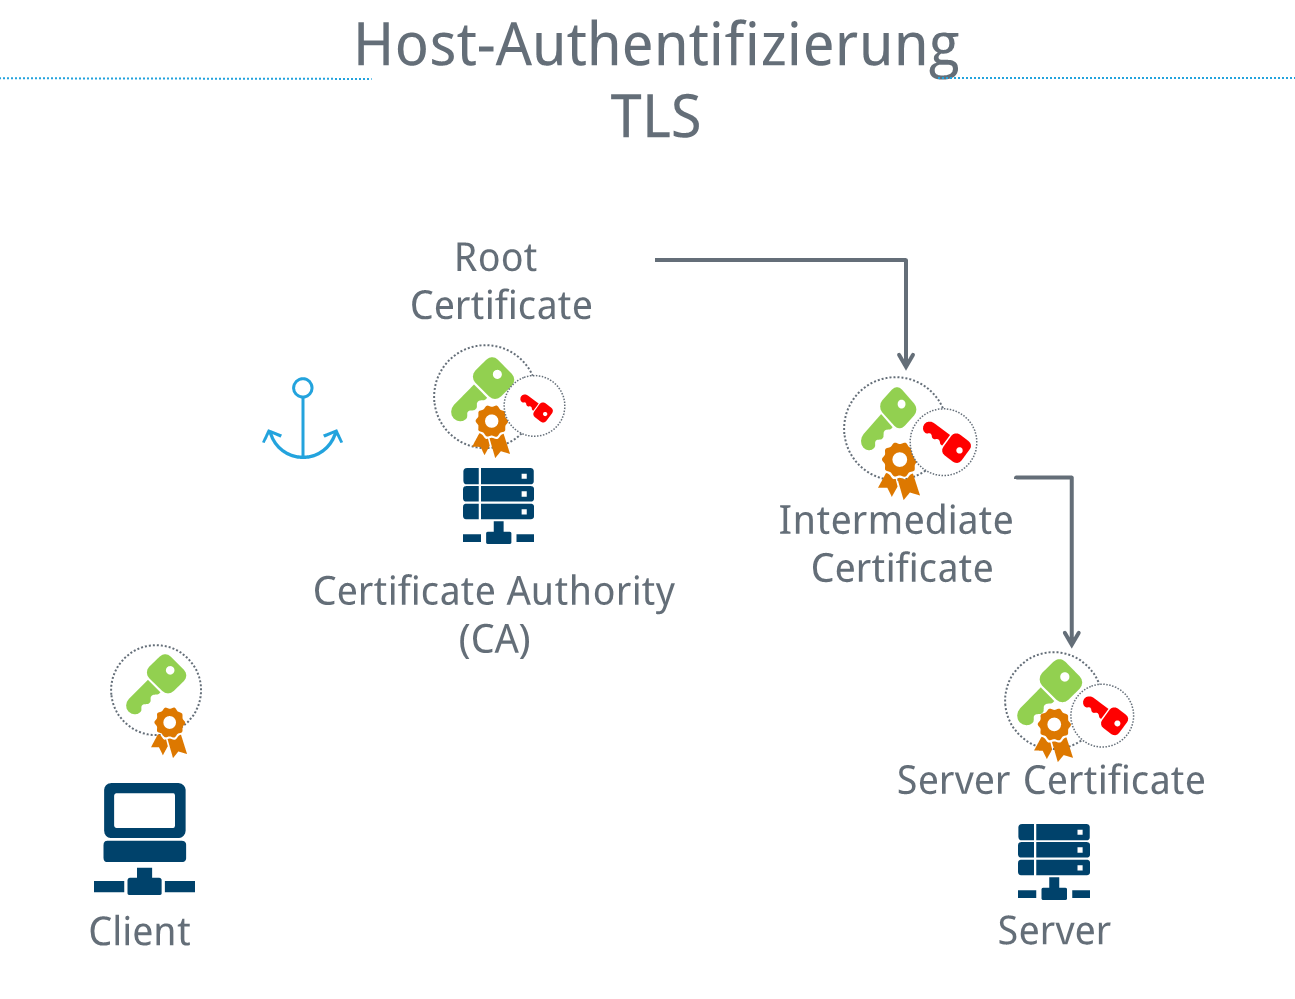 Vertrauensanker bei der Host-Authentifizierung bei TLS